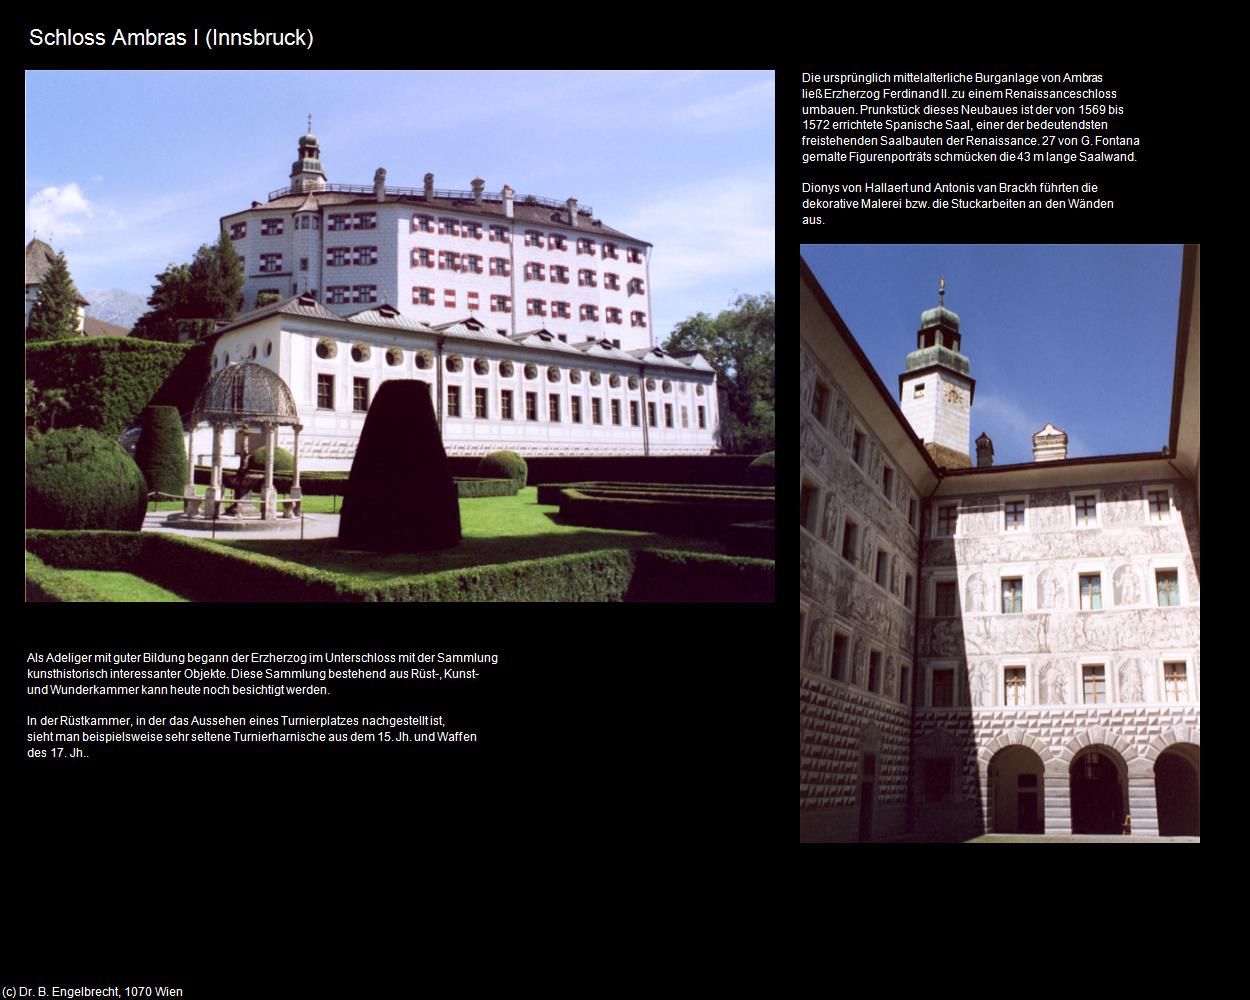 Schloss Ambras I (Amras) (Innsbruck) in Kulturatlas-TIROL